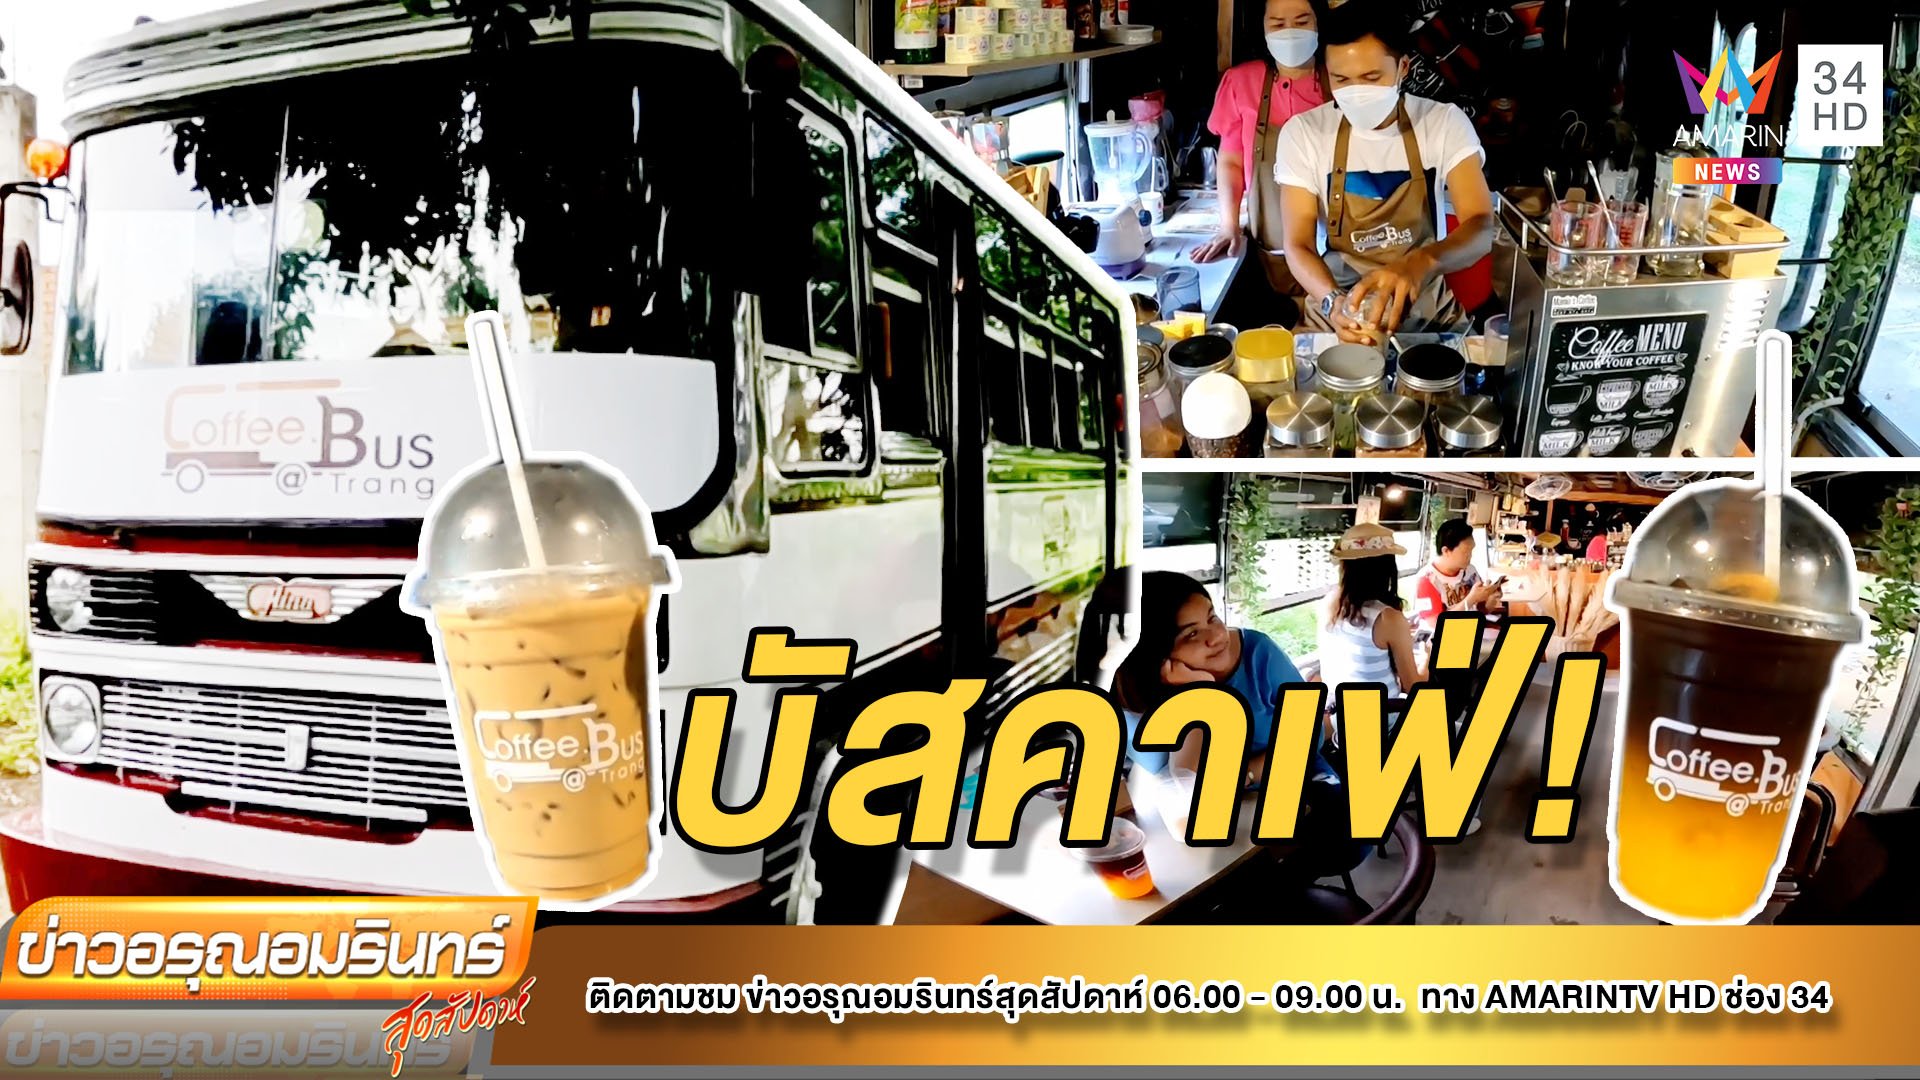 เช็กอิน! คาเฟ่เปิดใหม่ ตกแต่งสไตล์คลาสสิกสุดชิล ที่ Coffee Bus @Trang | ข่าวอรุณอมรินทร์ | 23 เม.ย. 65 | AMARIN TVHD34